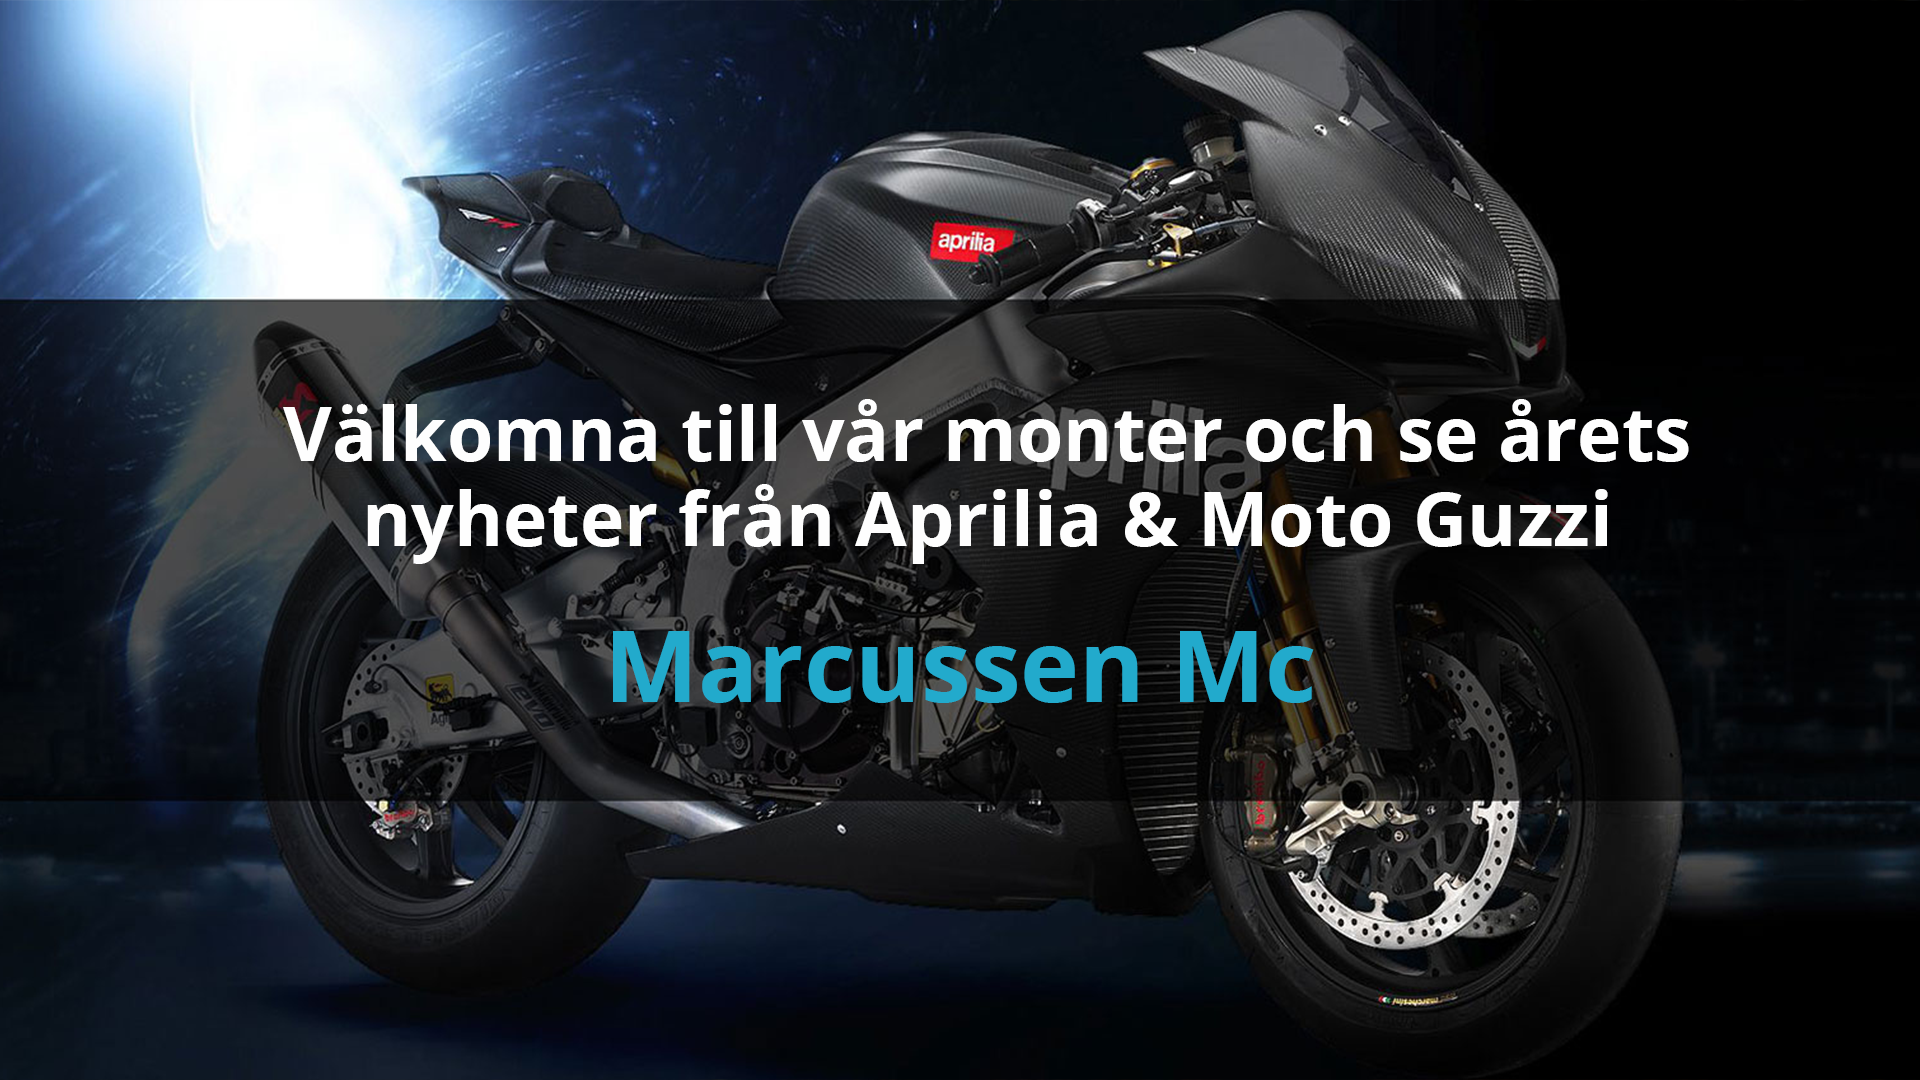 Marcussen Mc